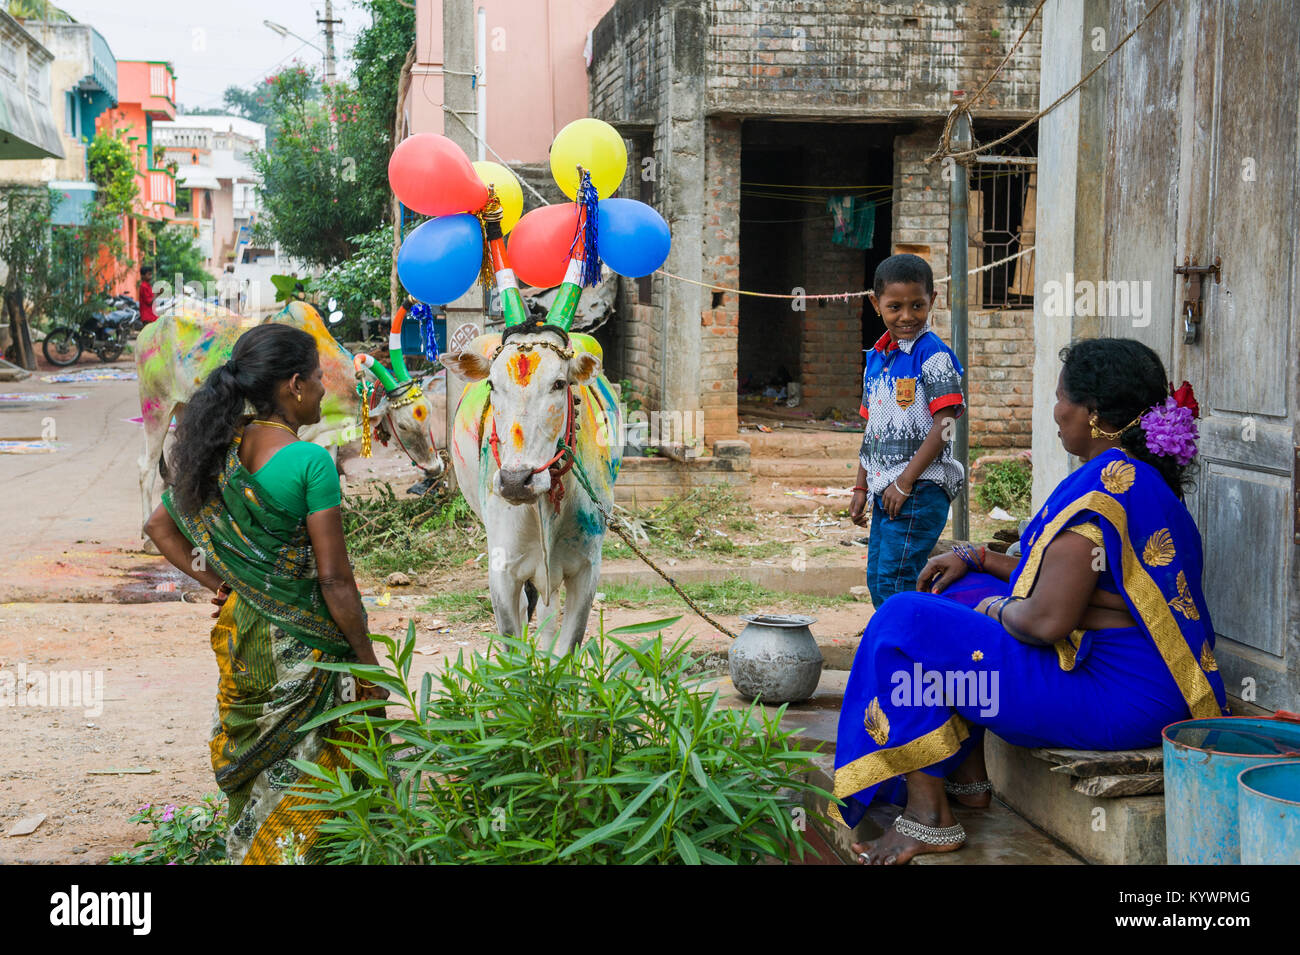 Tamil Nadu, Inde. 16 janvier, 2018. Pongal, le harvest festival dédié au soleil, célébré dans le village de Kuilapalayam au Tamil Nadu. Les vaches sont habillés et colorés pour la parade. Crédit : Marco Saroldi/Alamy Live News Banque D'Images